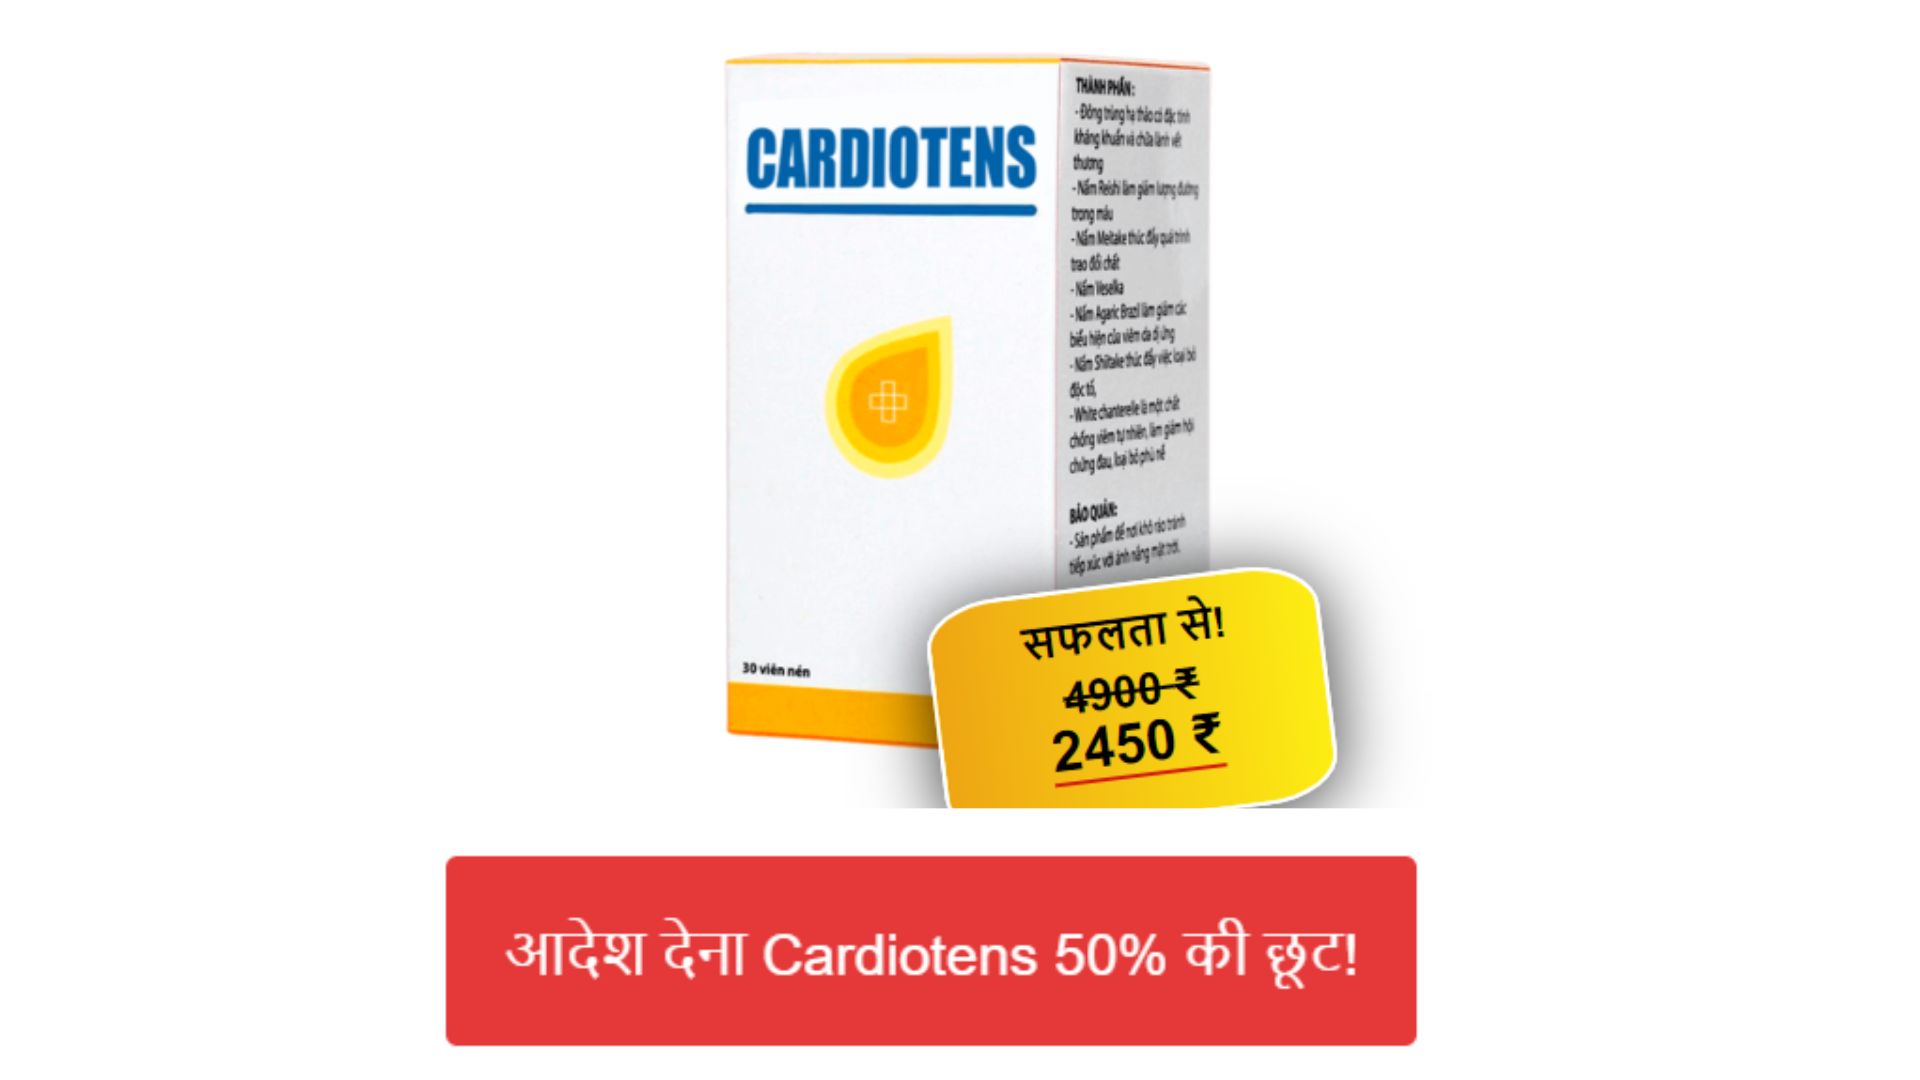 Cardiotens Price in India